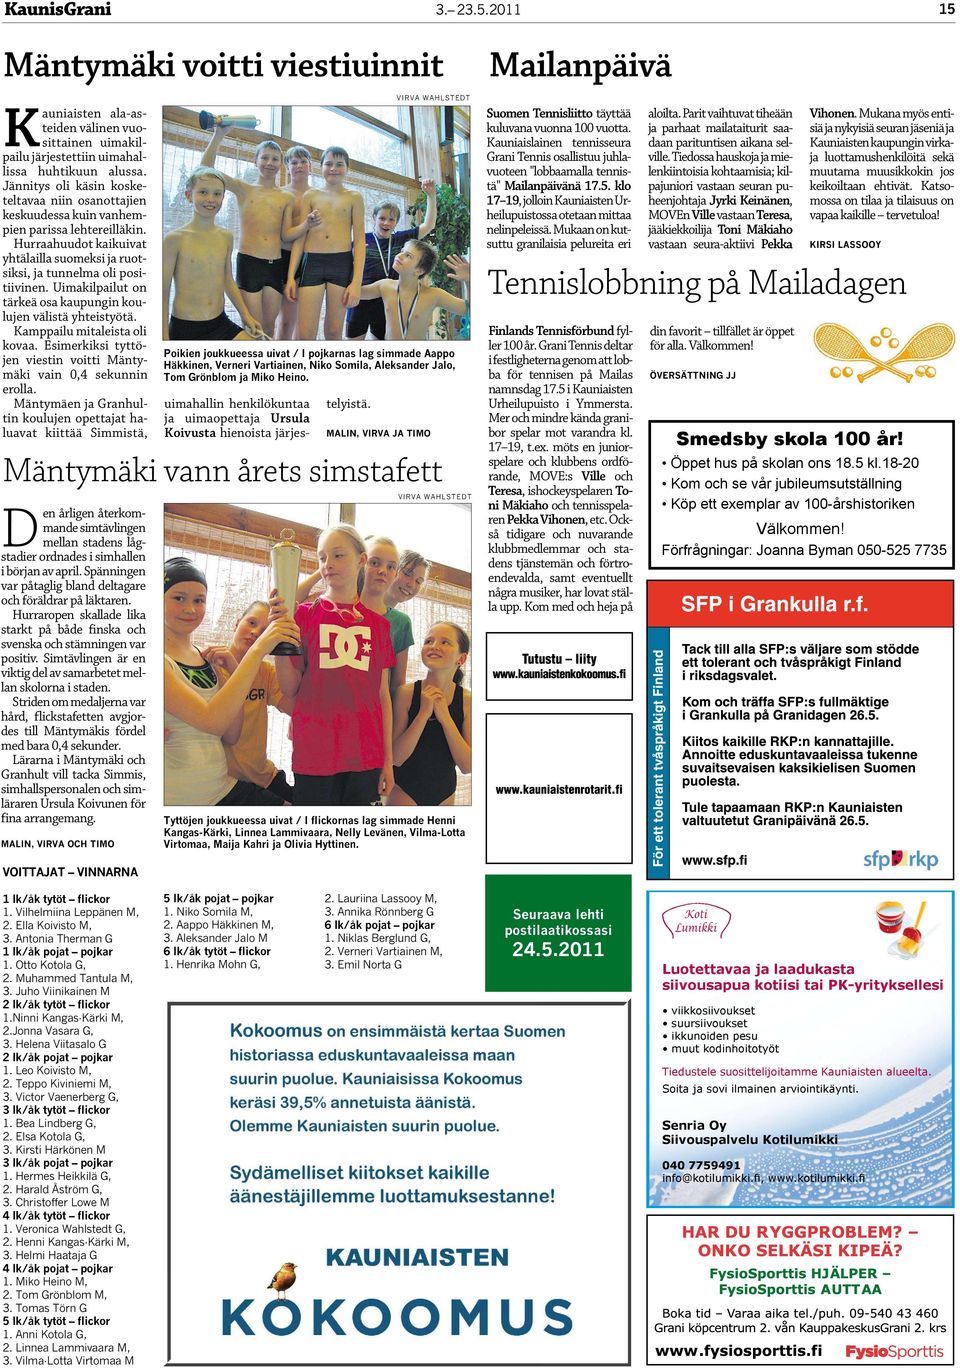 Uimakilpailut on tärkeä osa kaupungin koulujen välistä yhteistyötä. Kamppailu mitaleista oli kovaa. Esimerkiksi tyttöjen viestin voitti Mäntymäki vain 0,4 sekunnin erolla.